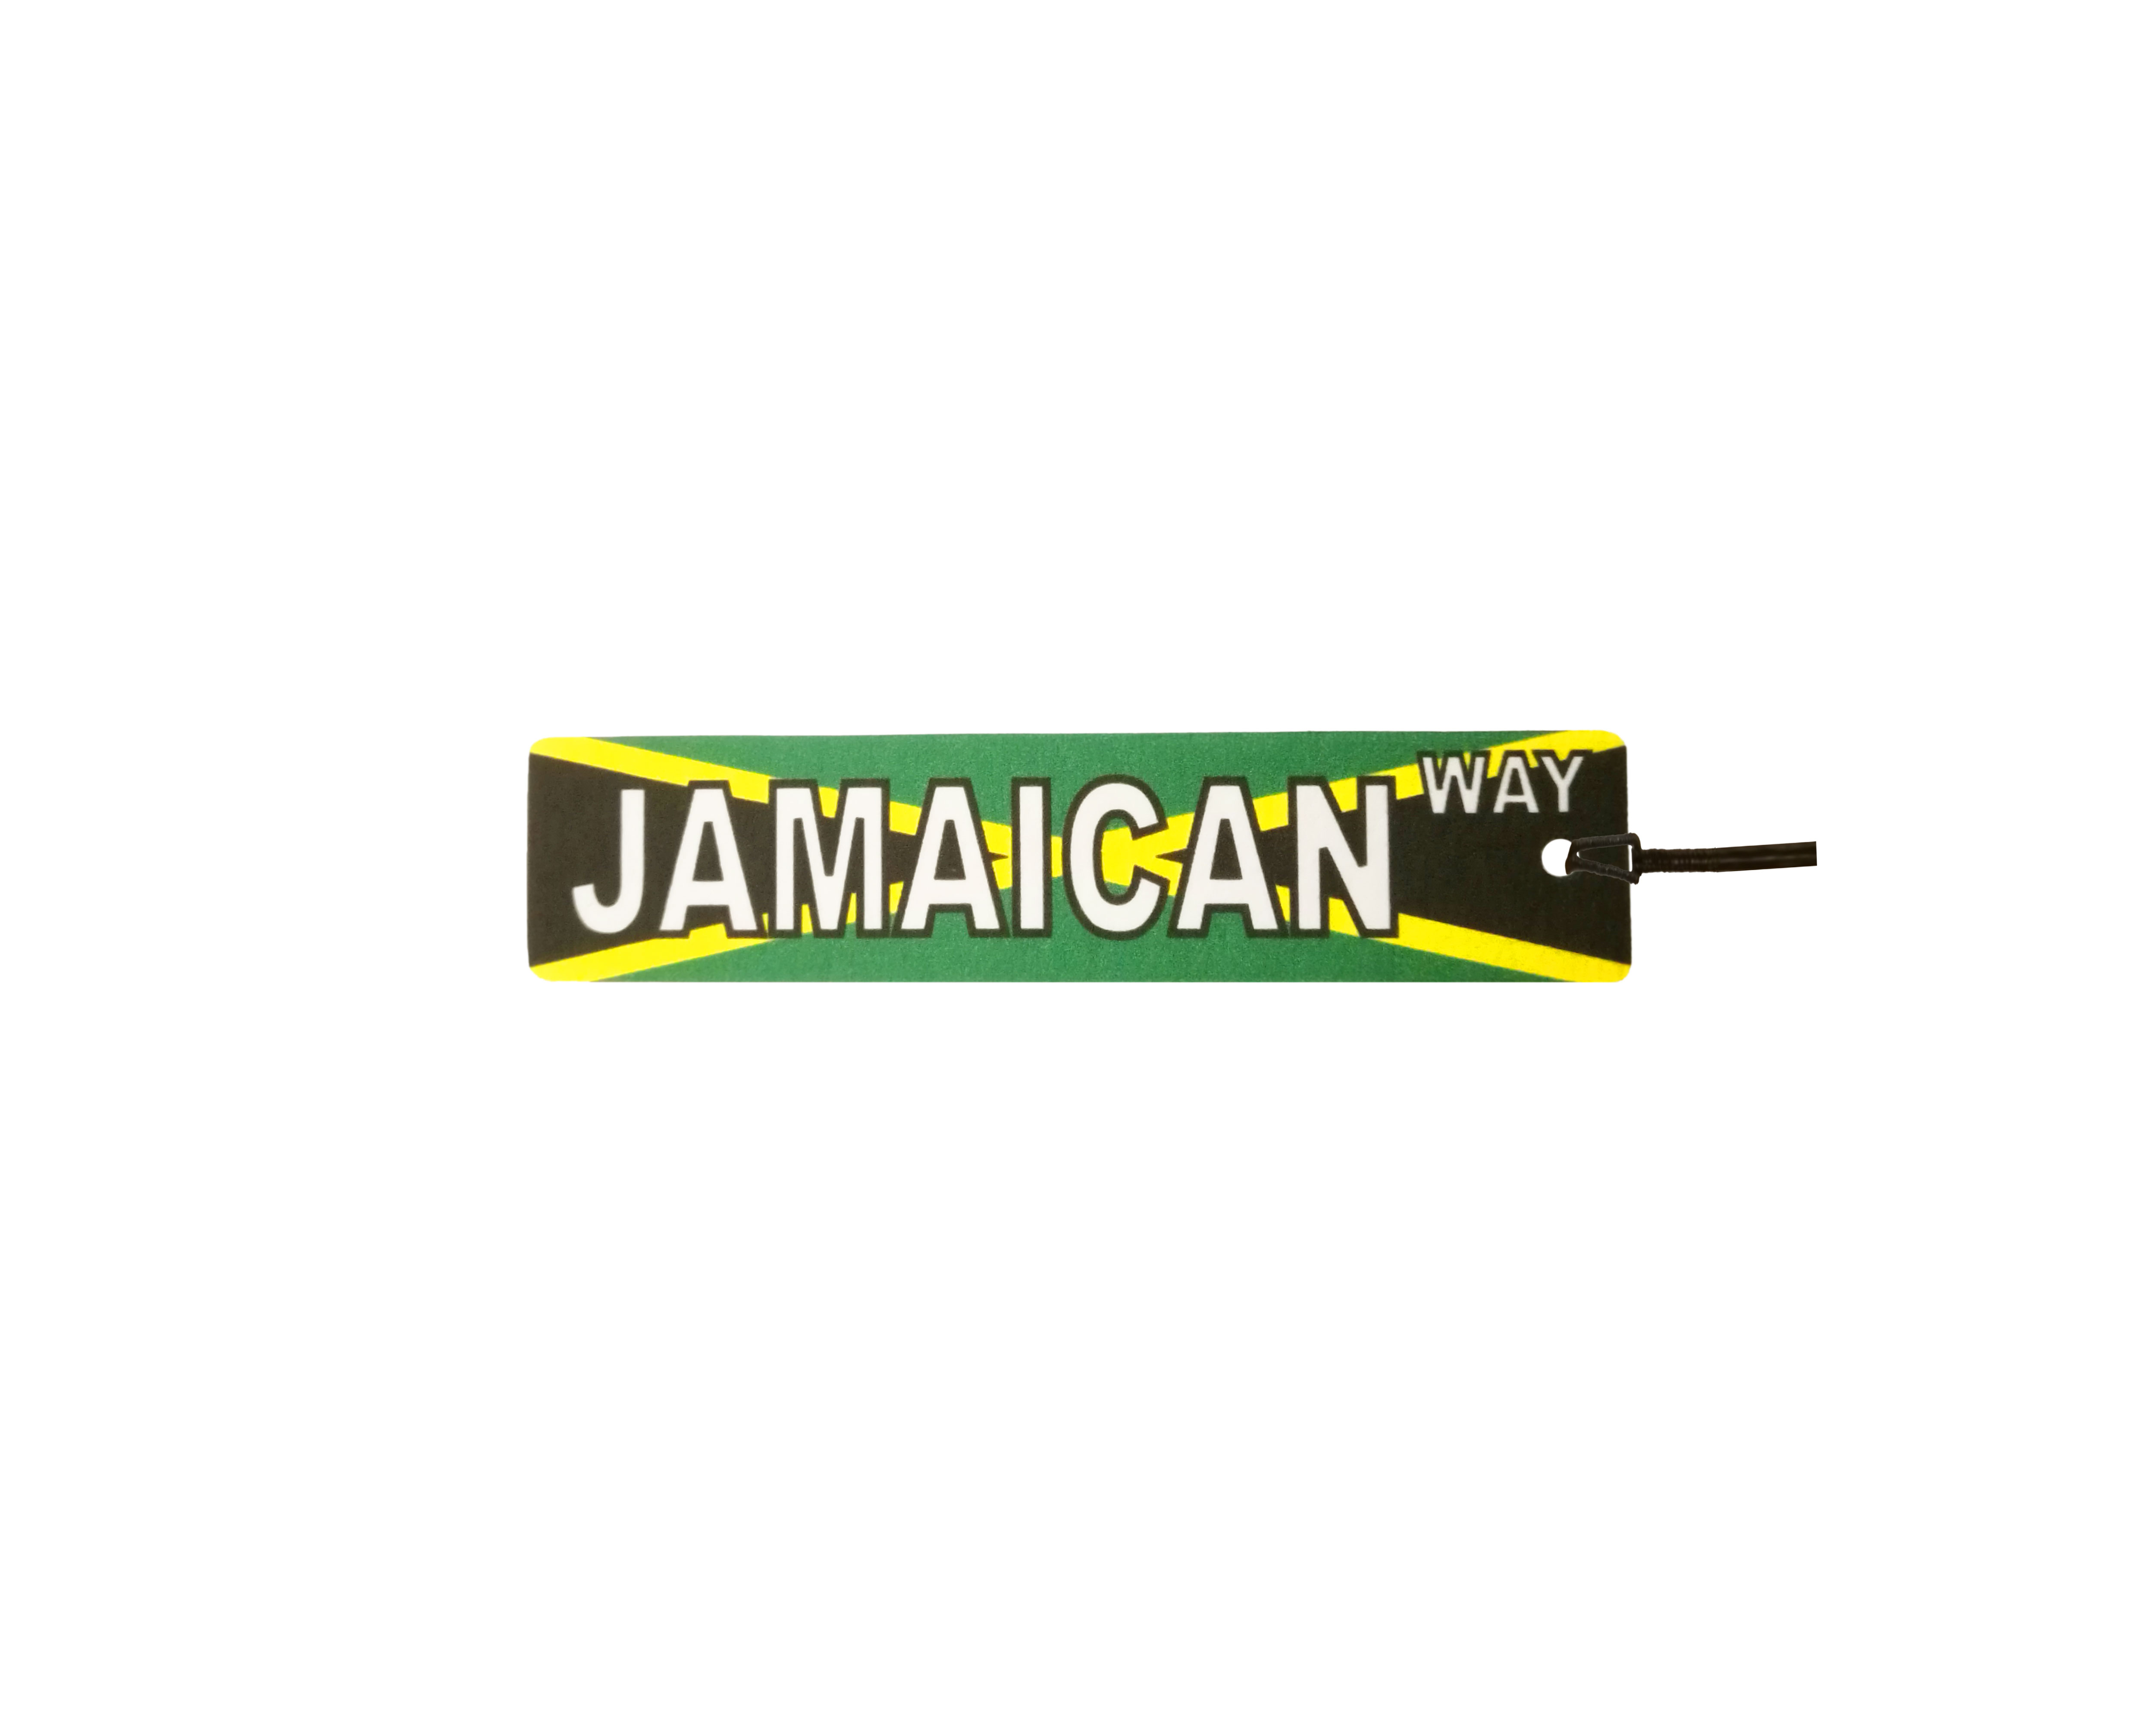 Jamaican Way Street Sign